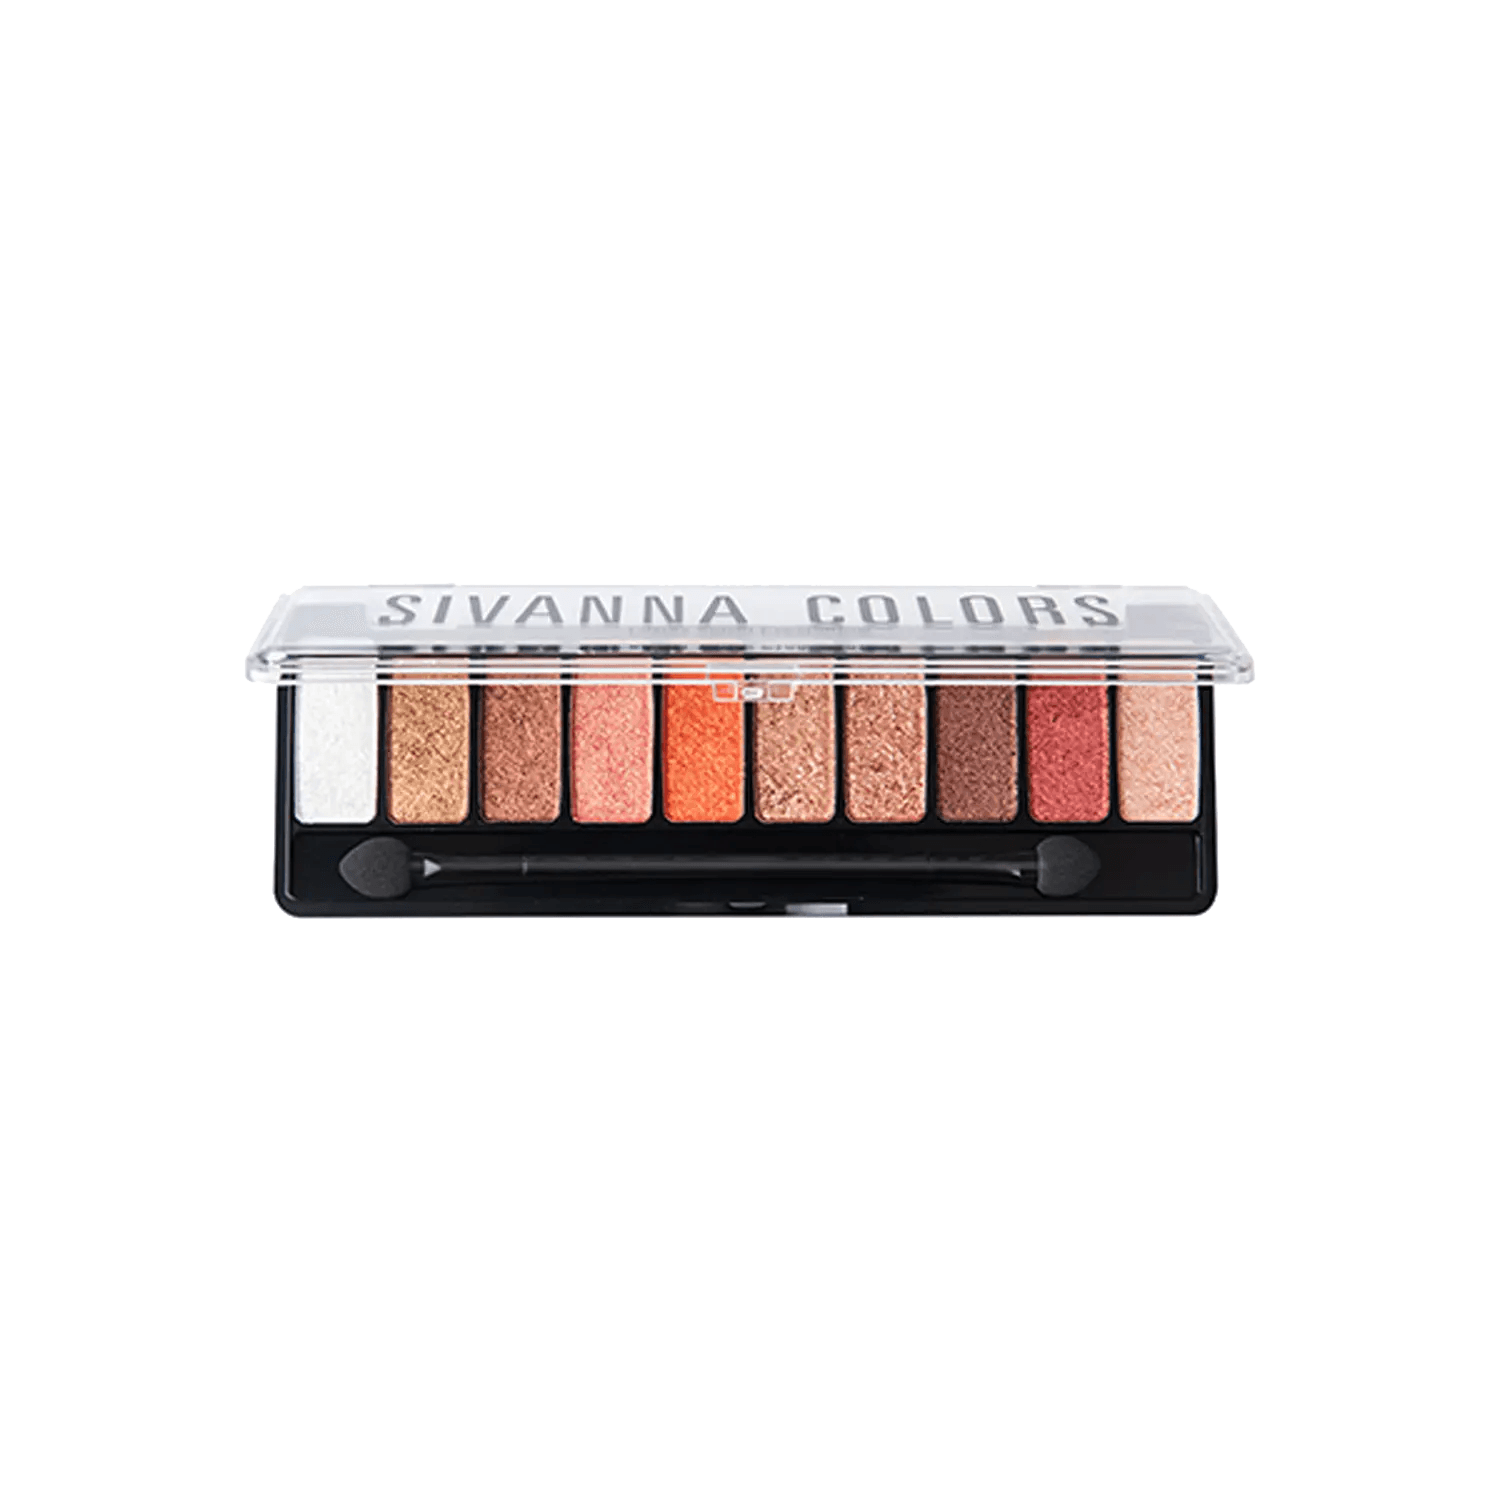 Sivanna | Sivanna Colors Luxury Velvet Eyeshadow Palette - 01 Shade (12g)